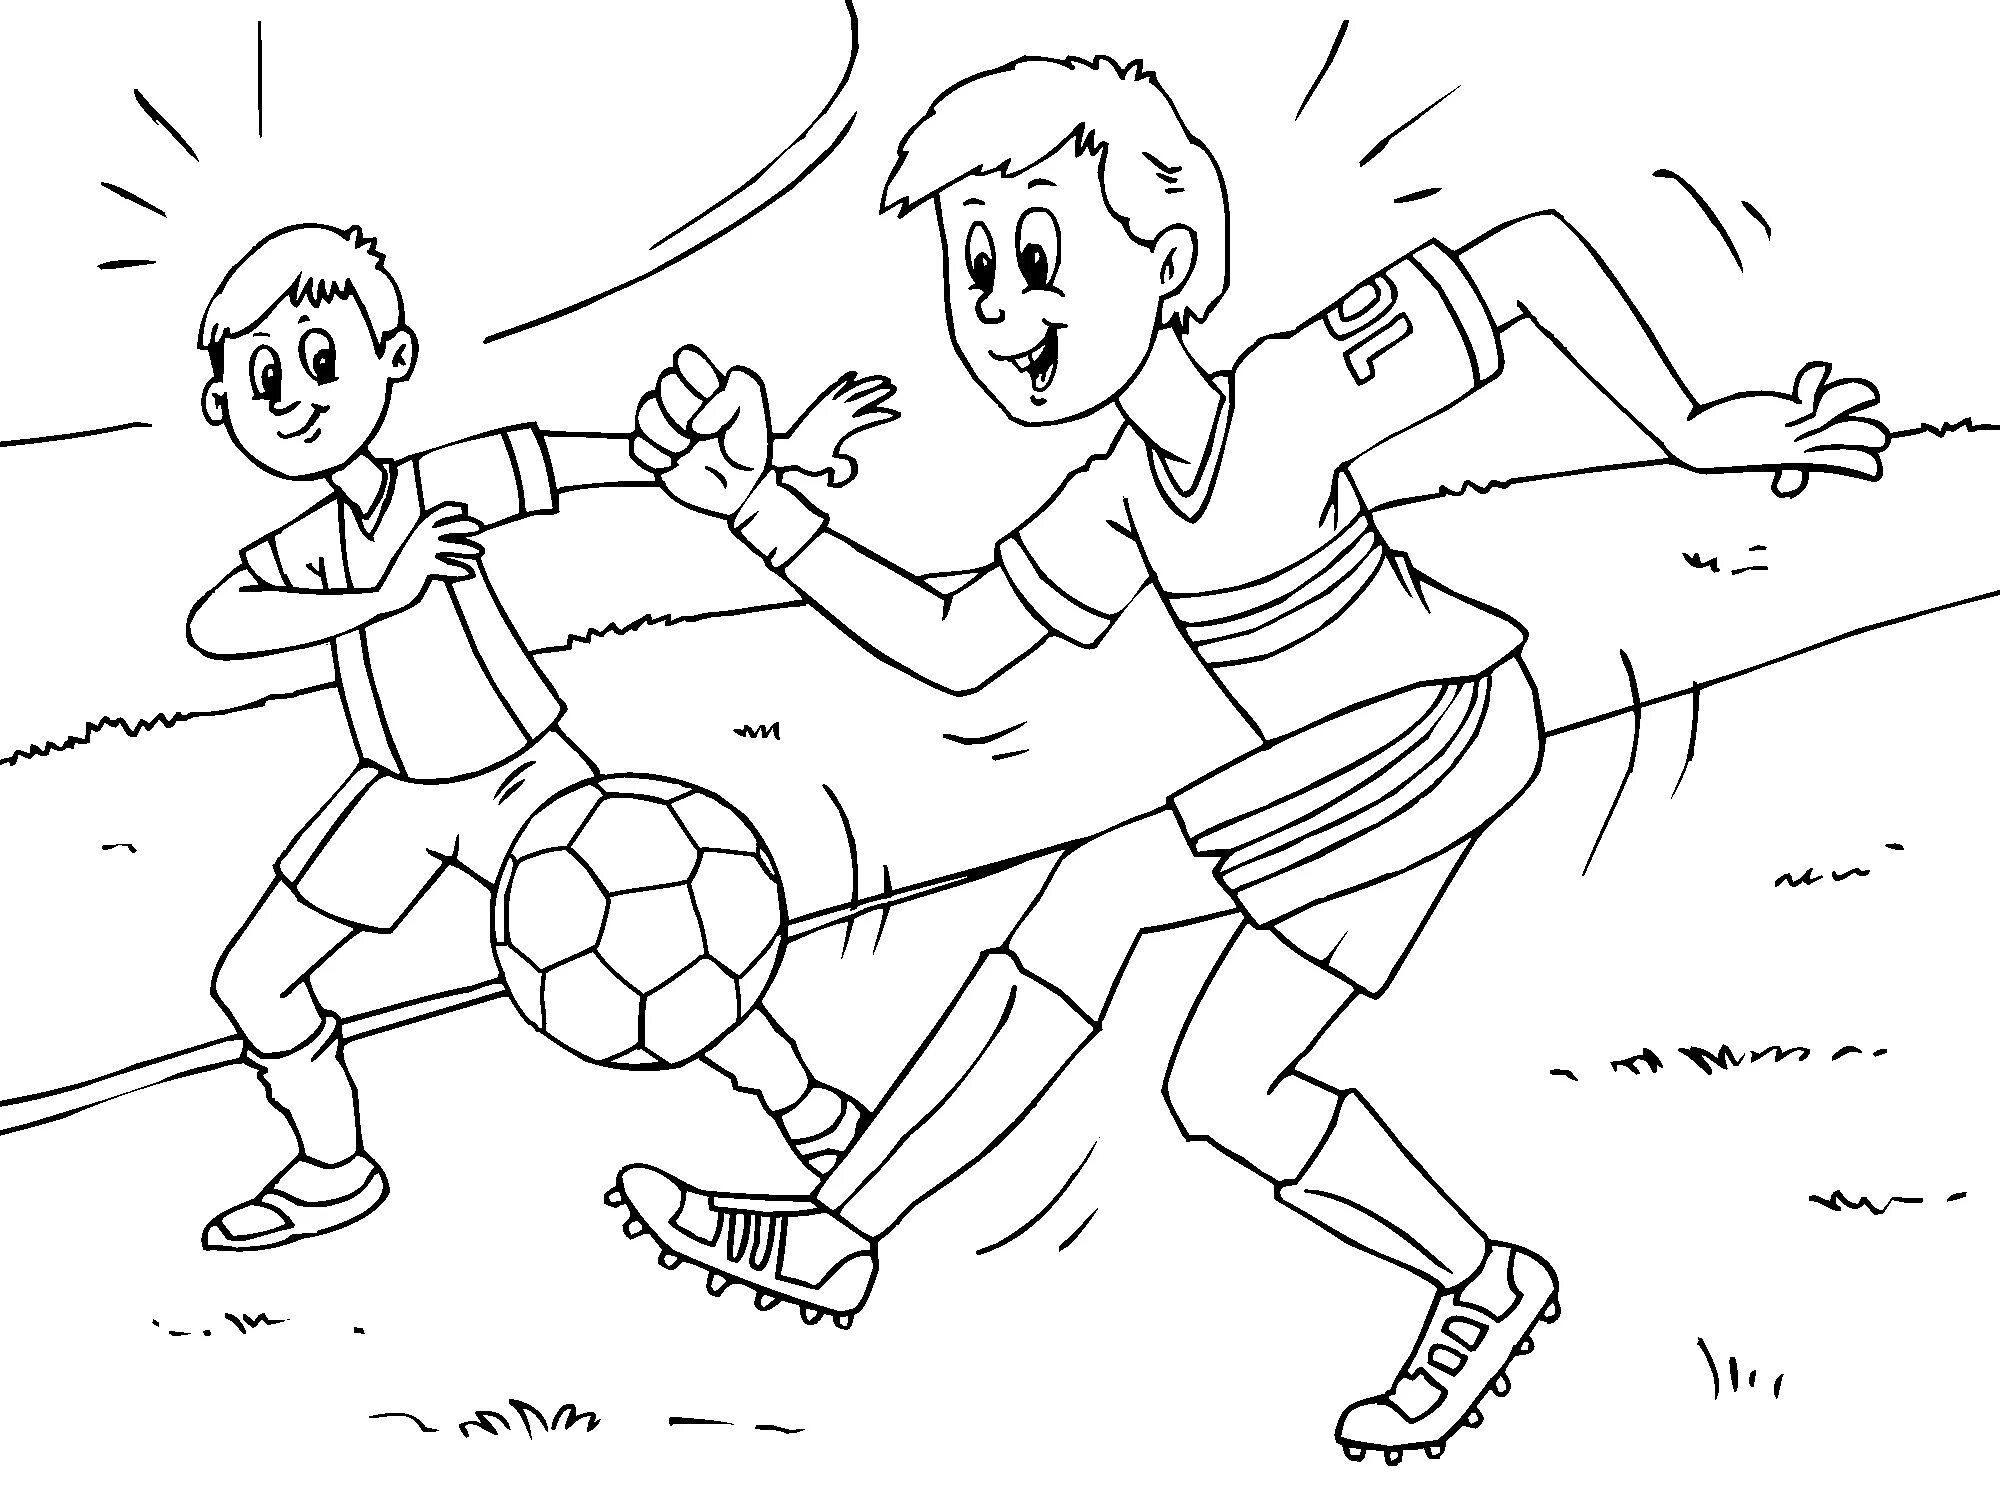 Играй рисовать хочу. Футбол раскраска для детей. Спортивные игры раскраска. Раскраска игра в футбол. Раскраска спорт для детей.